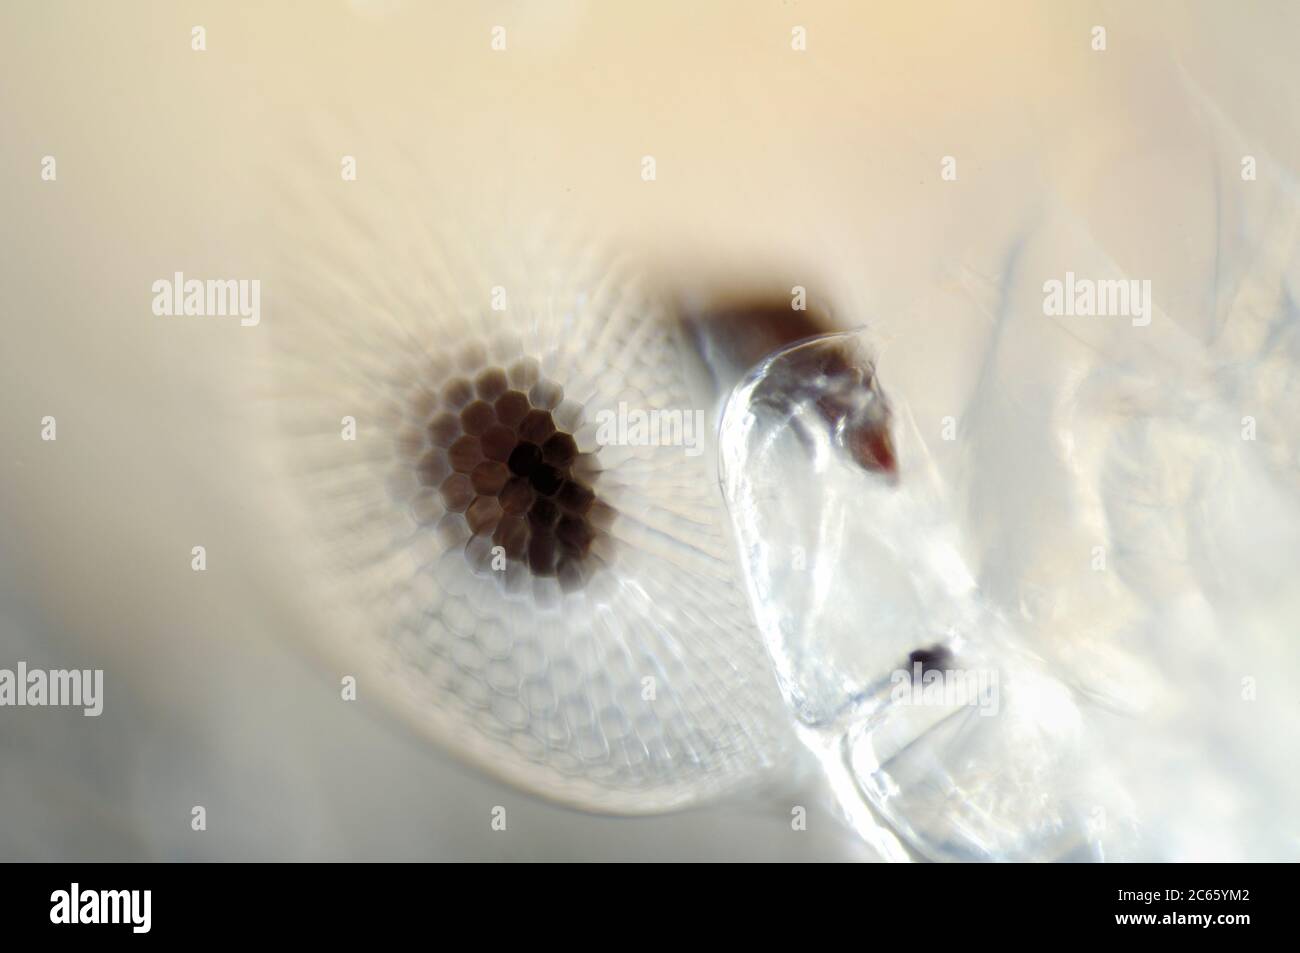 Tiefsee-Plankton, die Augen des erwachsenen Phronima sind ein weiteres Merkmal des Staunens in einem Tier, das bereits mit außergewöhnlichen Gewohnheiten und Anpassungen behaftet ist, Phronima sp. Stockfoto